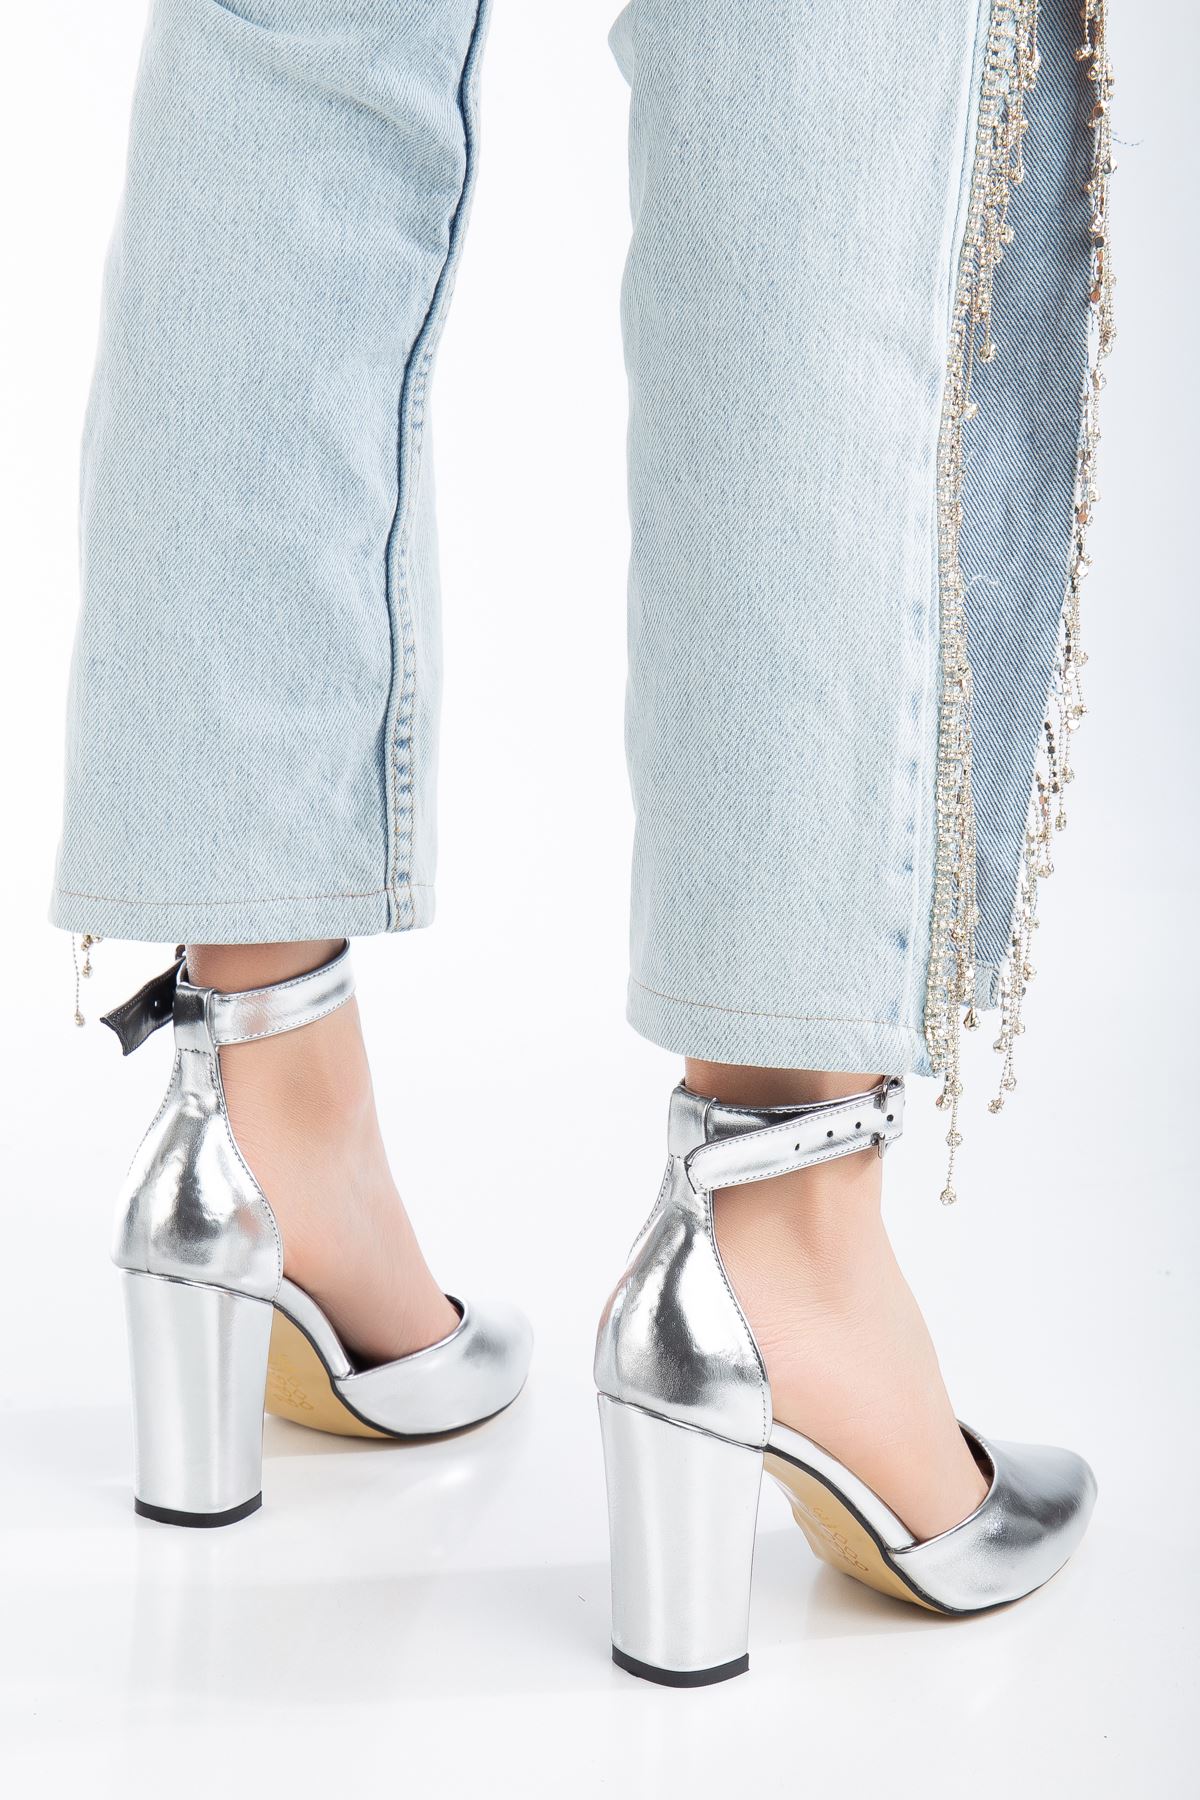 Lole Topuklu Gümüş Cilt Detaylı Topuklu Ayakkabı 